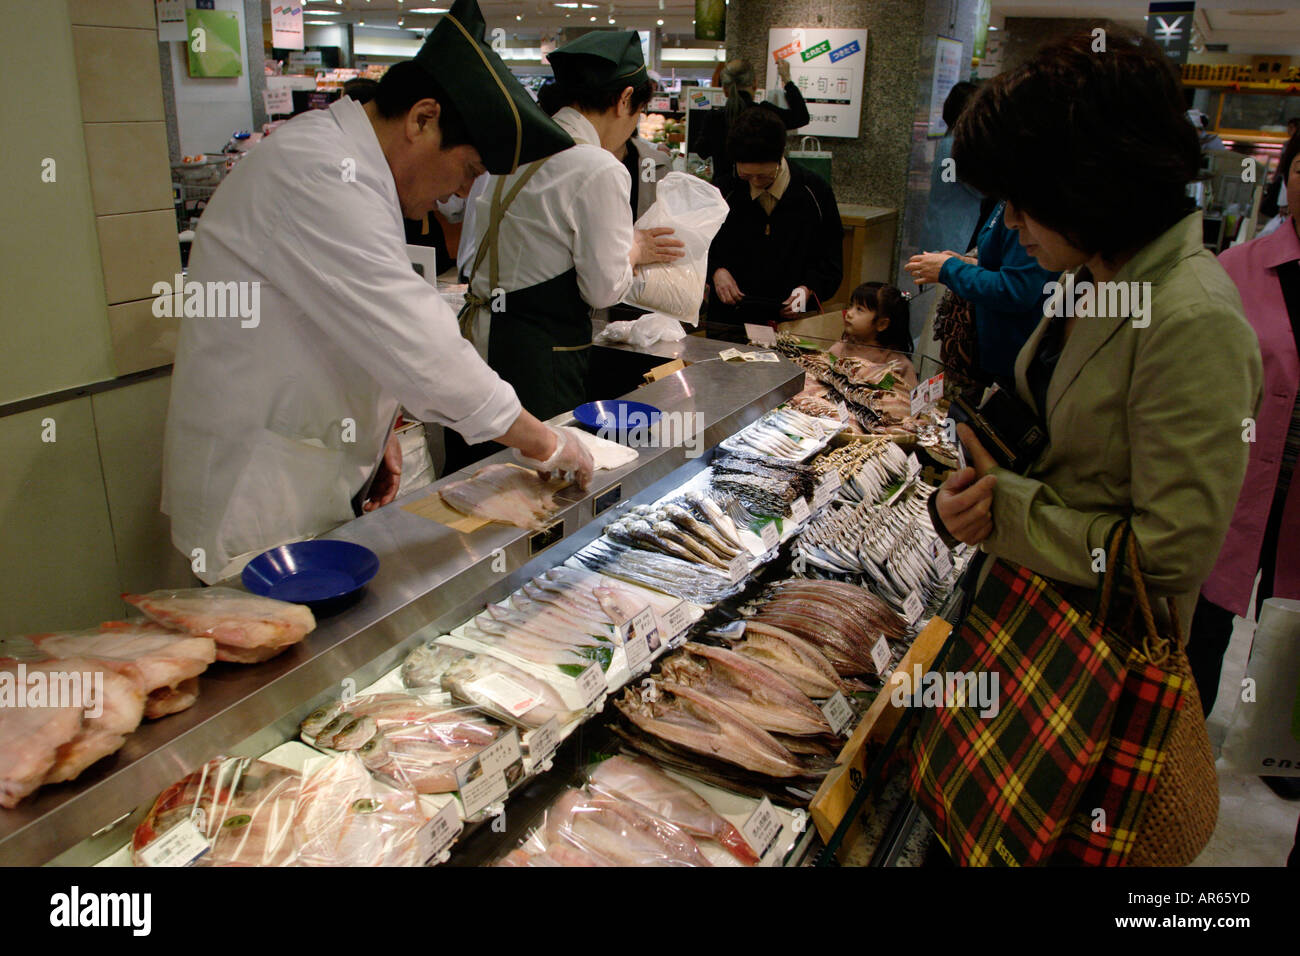 Magasin Isetan, food hall dans le sous-sol, du poisson, de l'Est krilo jesenice Shinjuku, Tokyo, Japon Banque D'Images